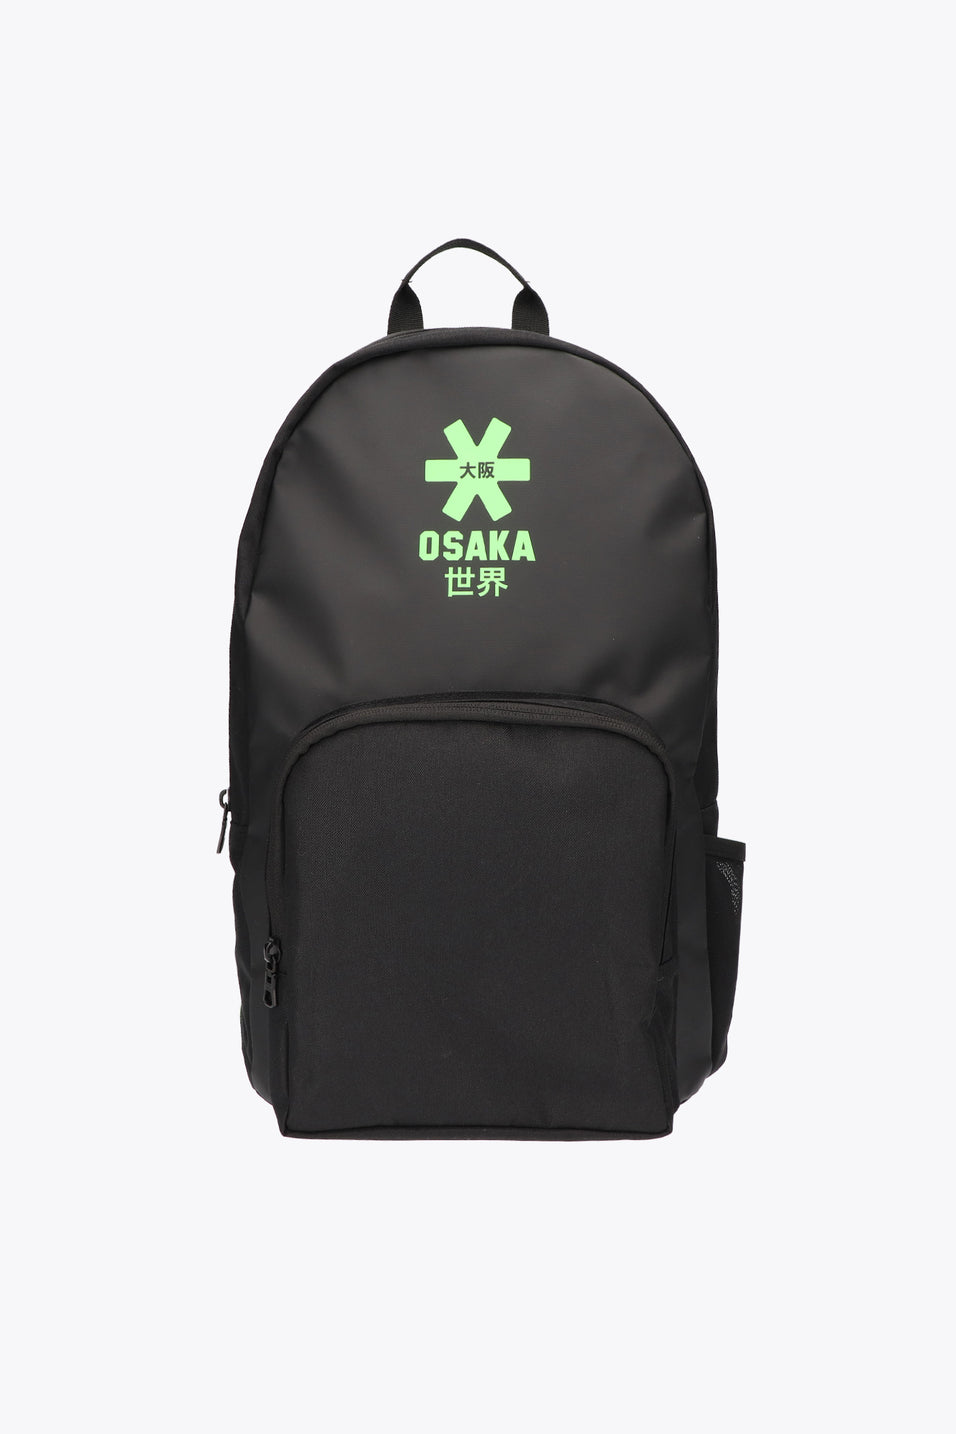 Osaka Field Hockey Bags | Osaka world – Osaka World